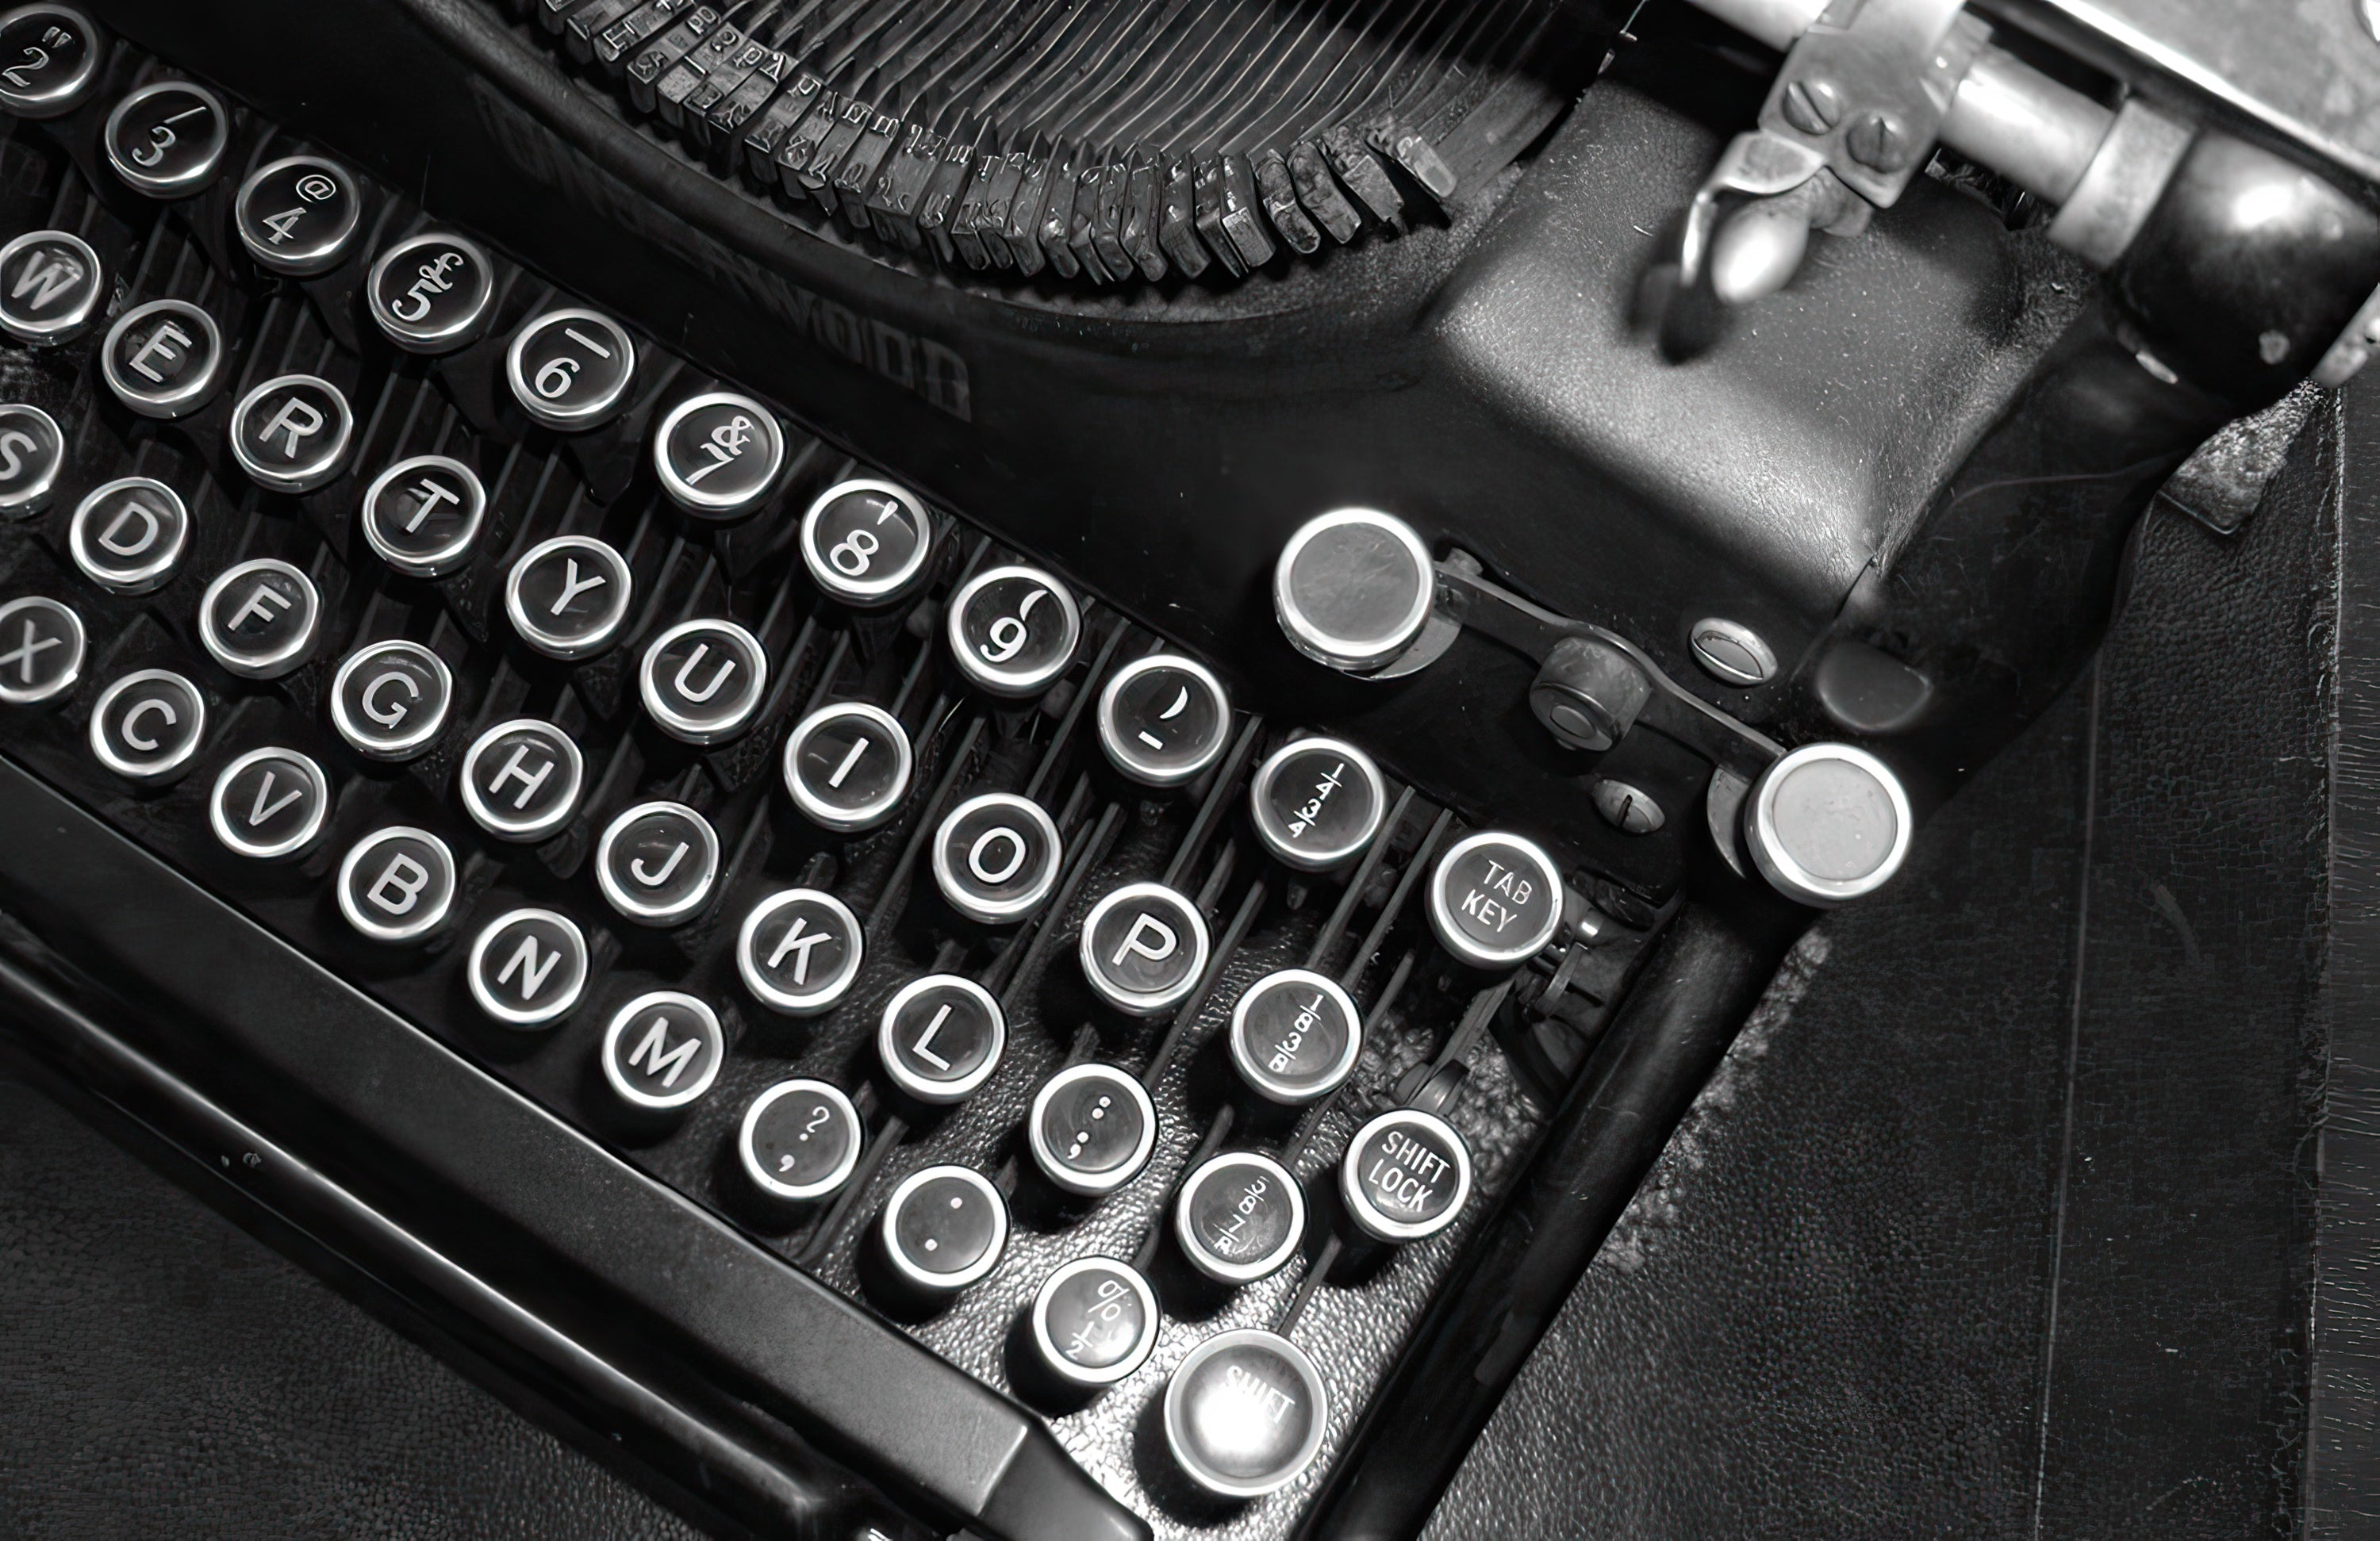 2022 Adapted Story Showcase - Image of vintage typewriter